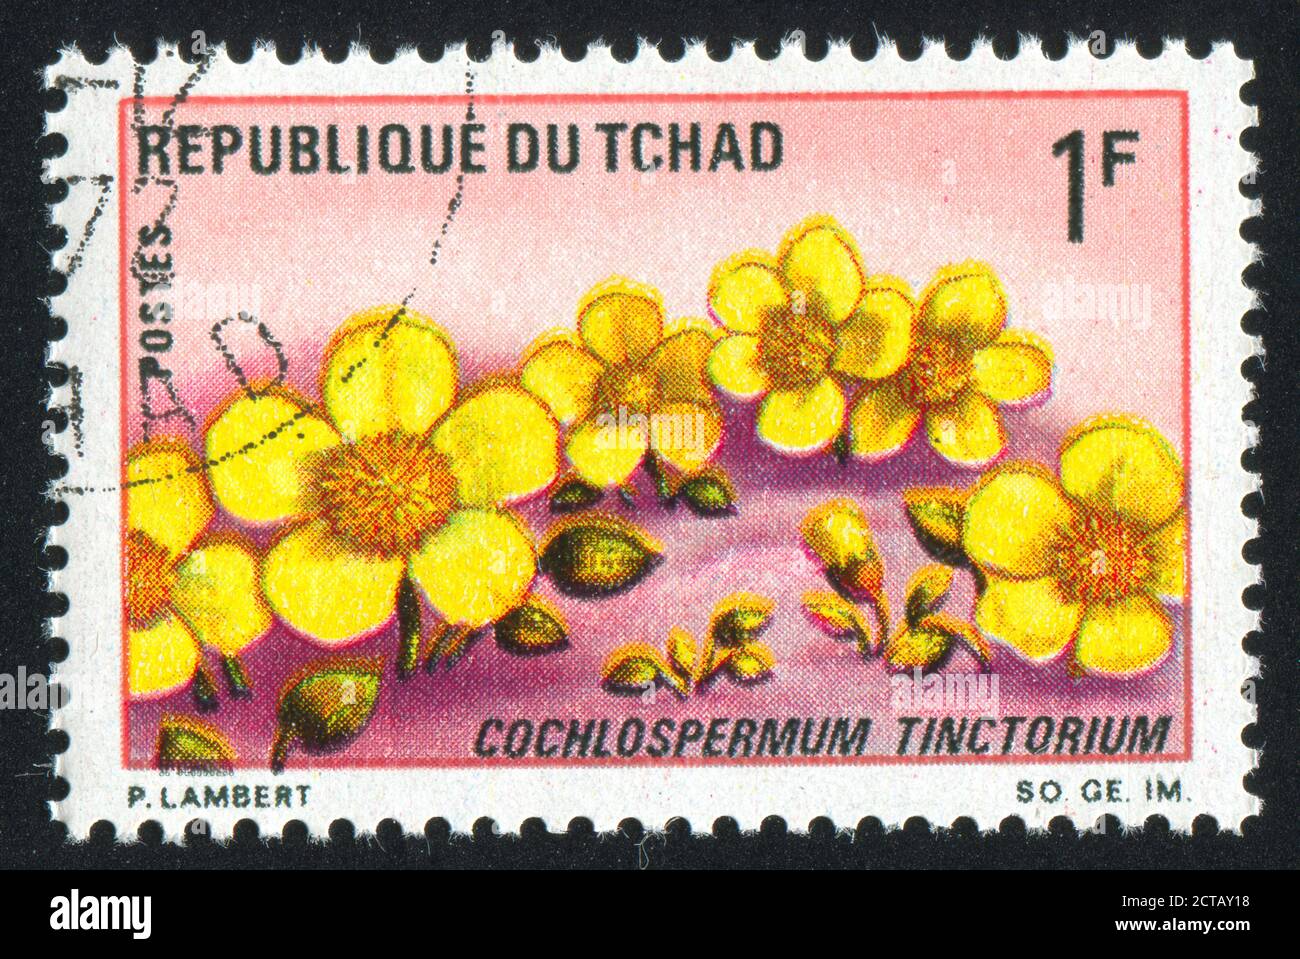 TCHAD - VERS 1969: Timbre imprimé par le Tchad, montre Cochlospermum Tinctorium, vers 1969. Banque D'Images